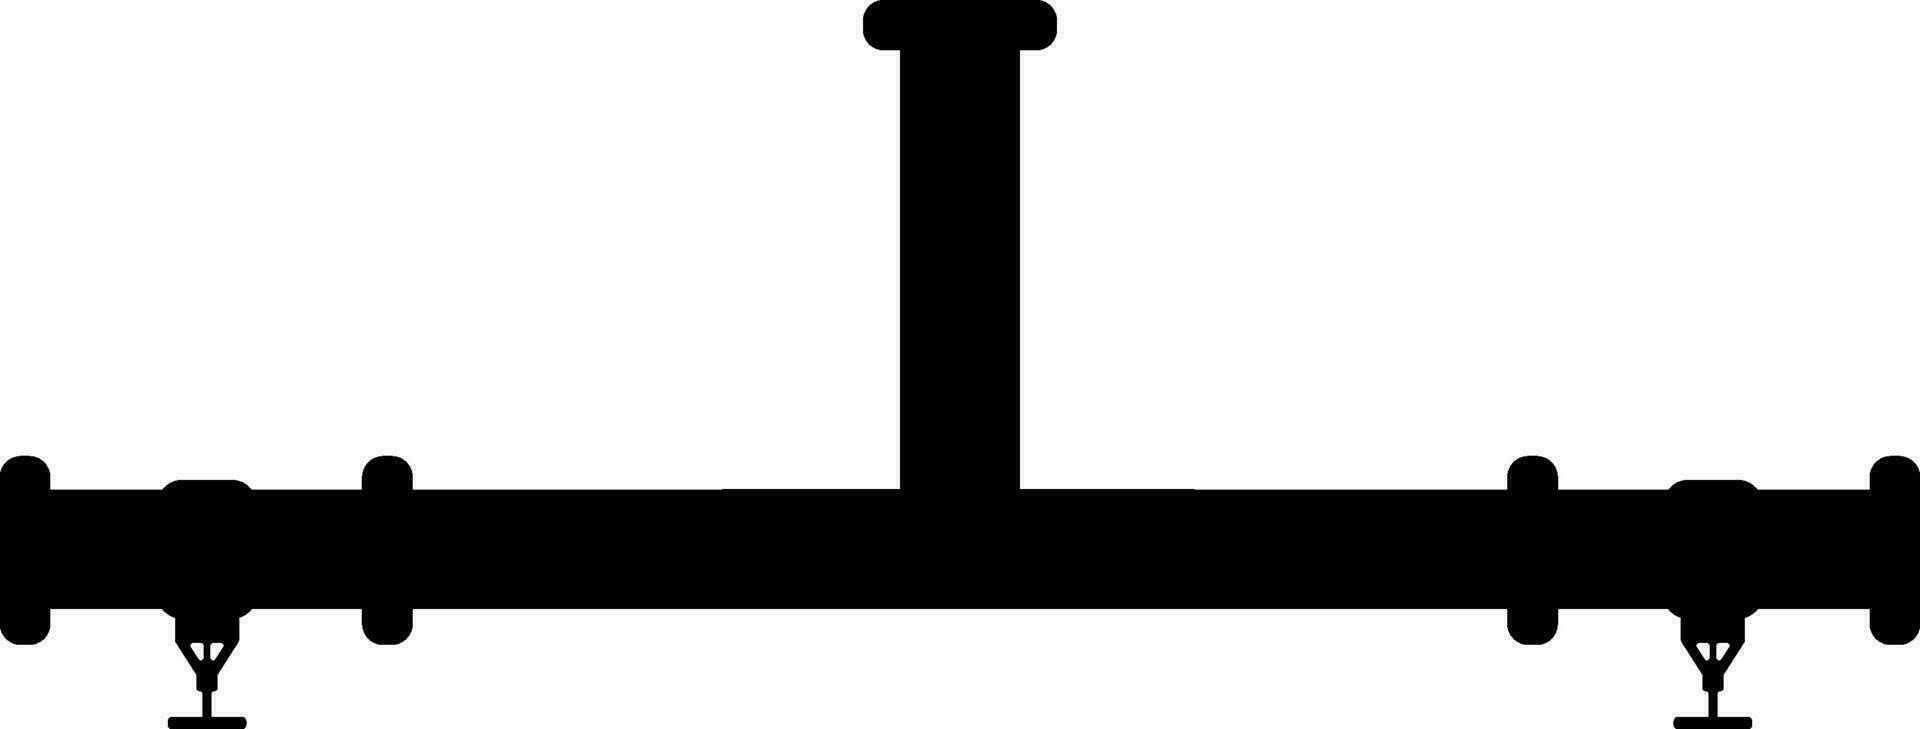 pijpleiding levering icoon met wereldbol kleppen in zwart kleur. vector